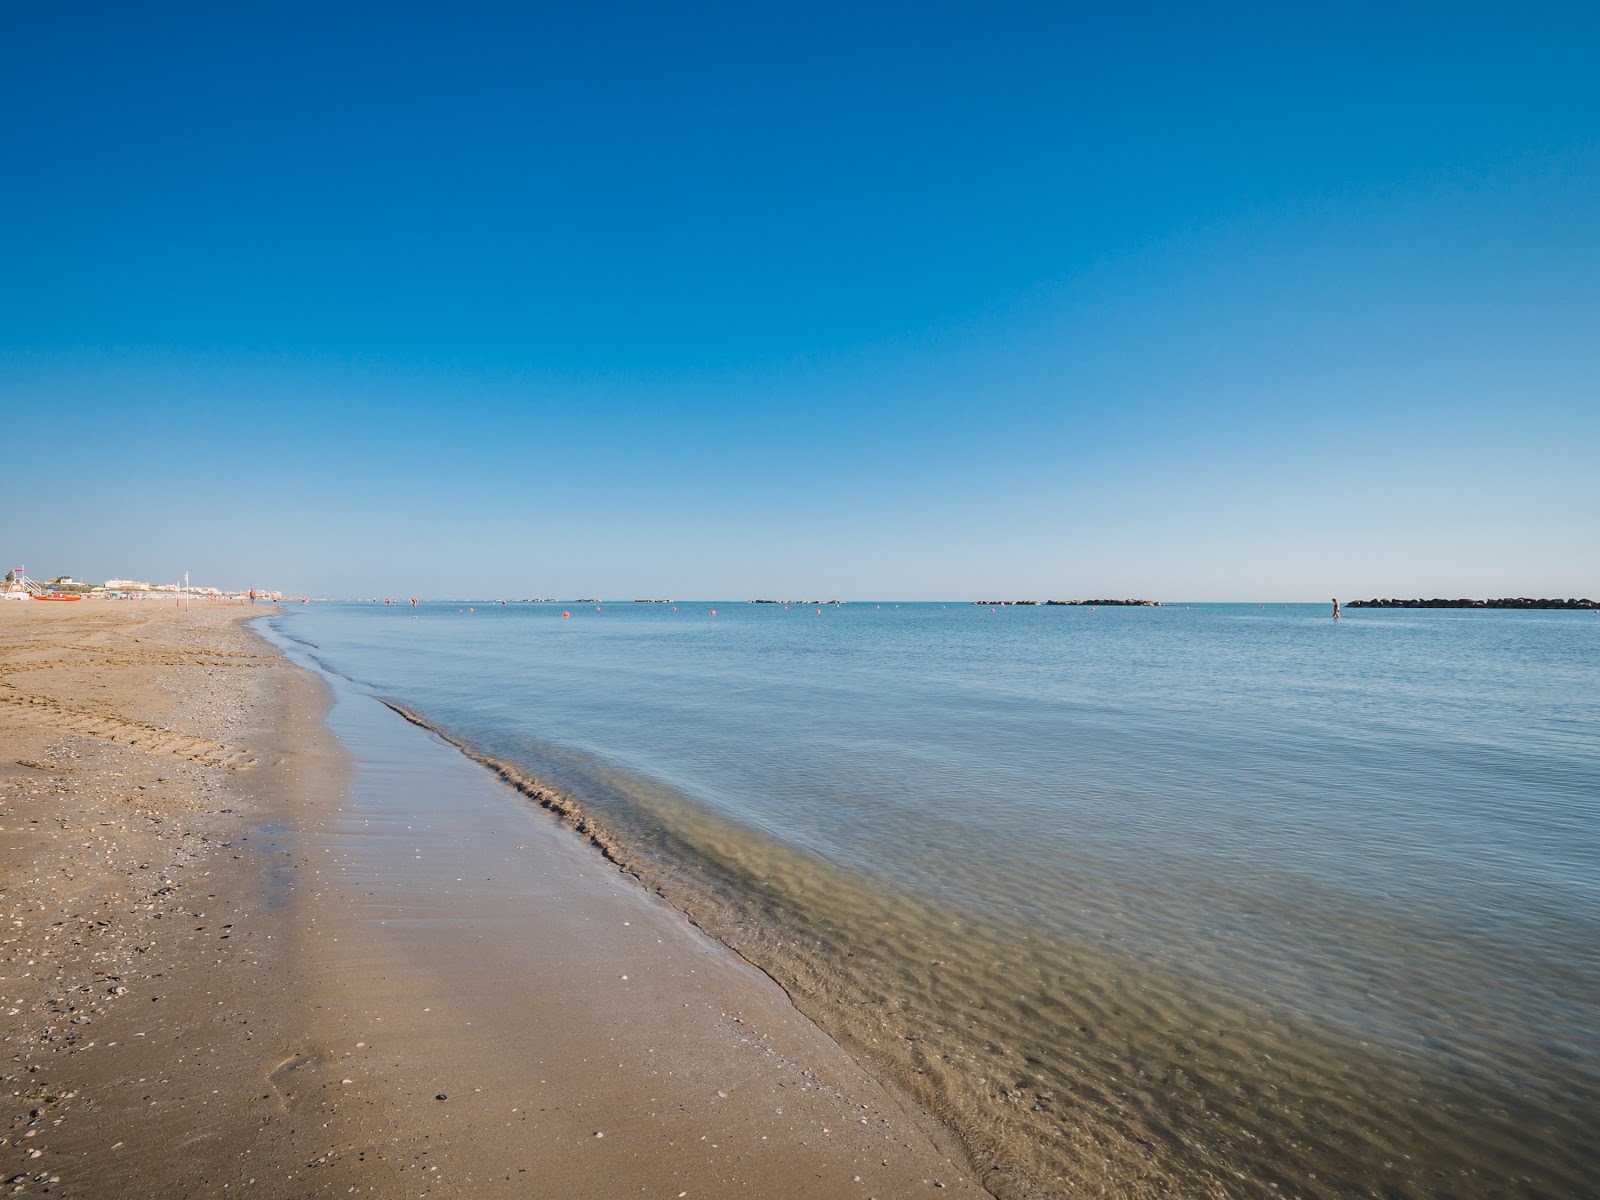 Senigallia beach'in fotoğrafı parlak kum yüzey ile